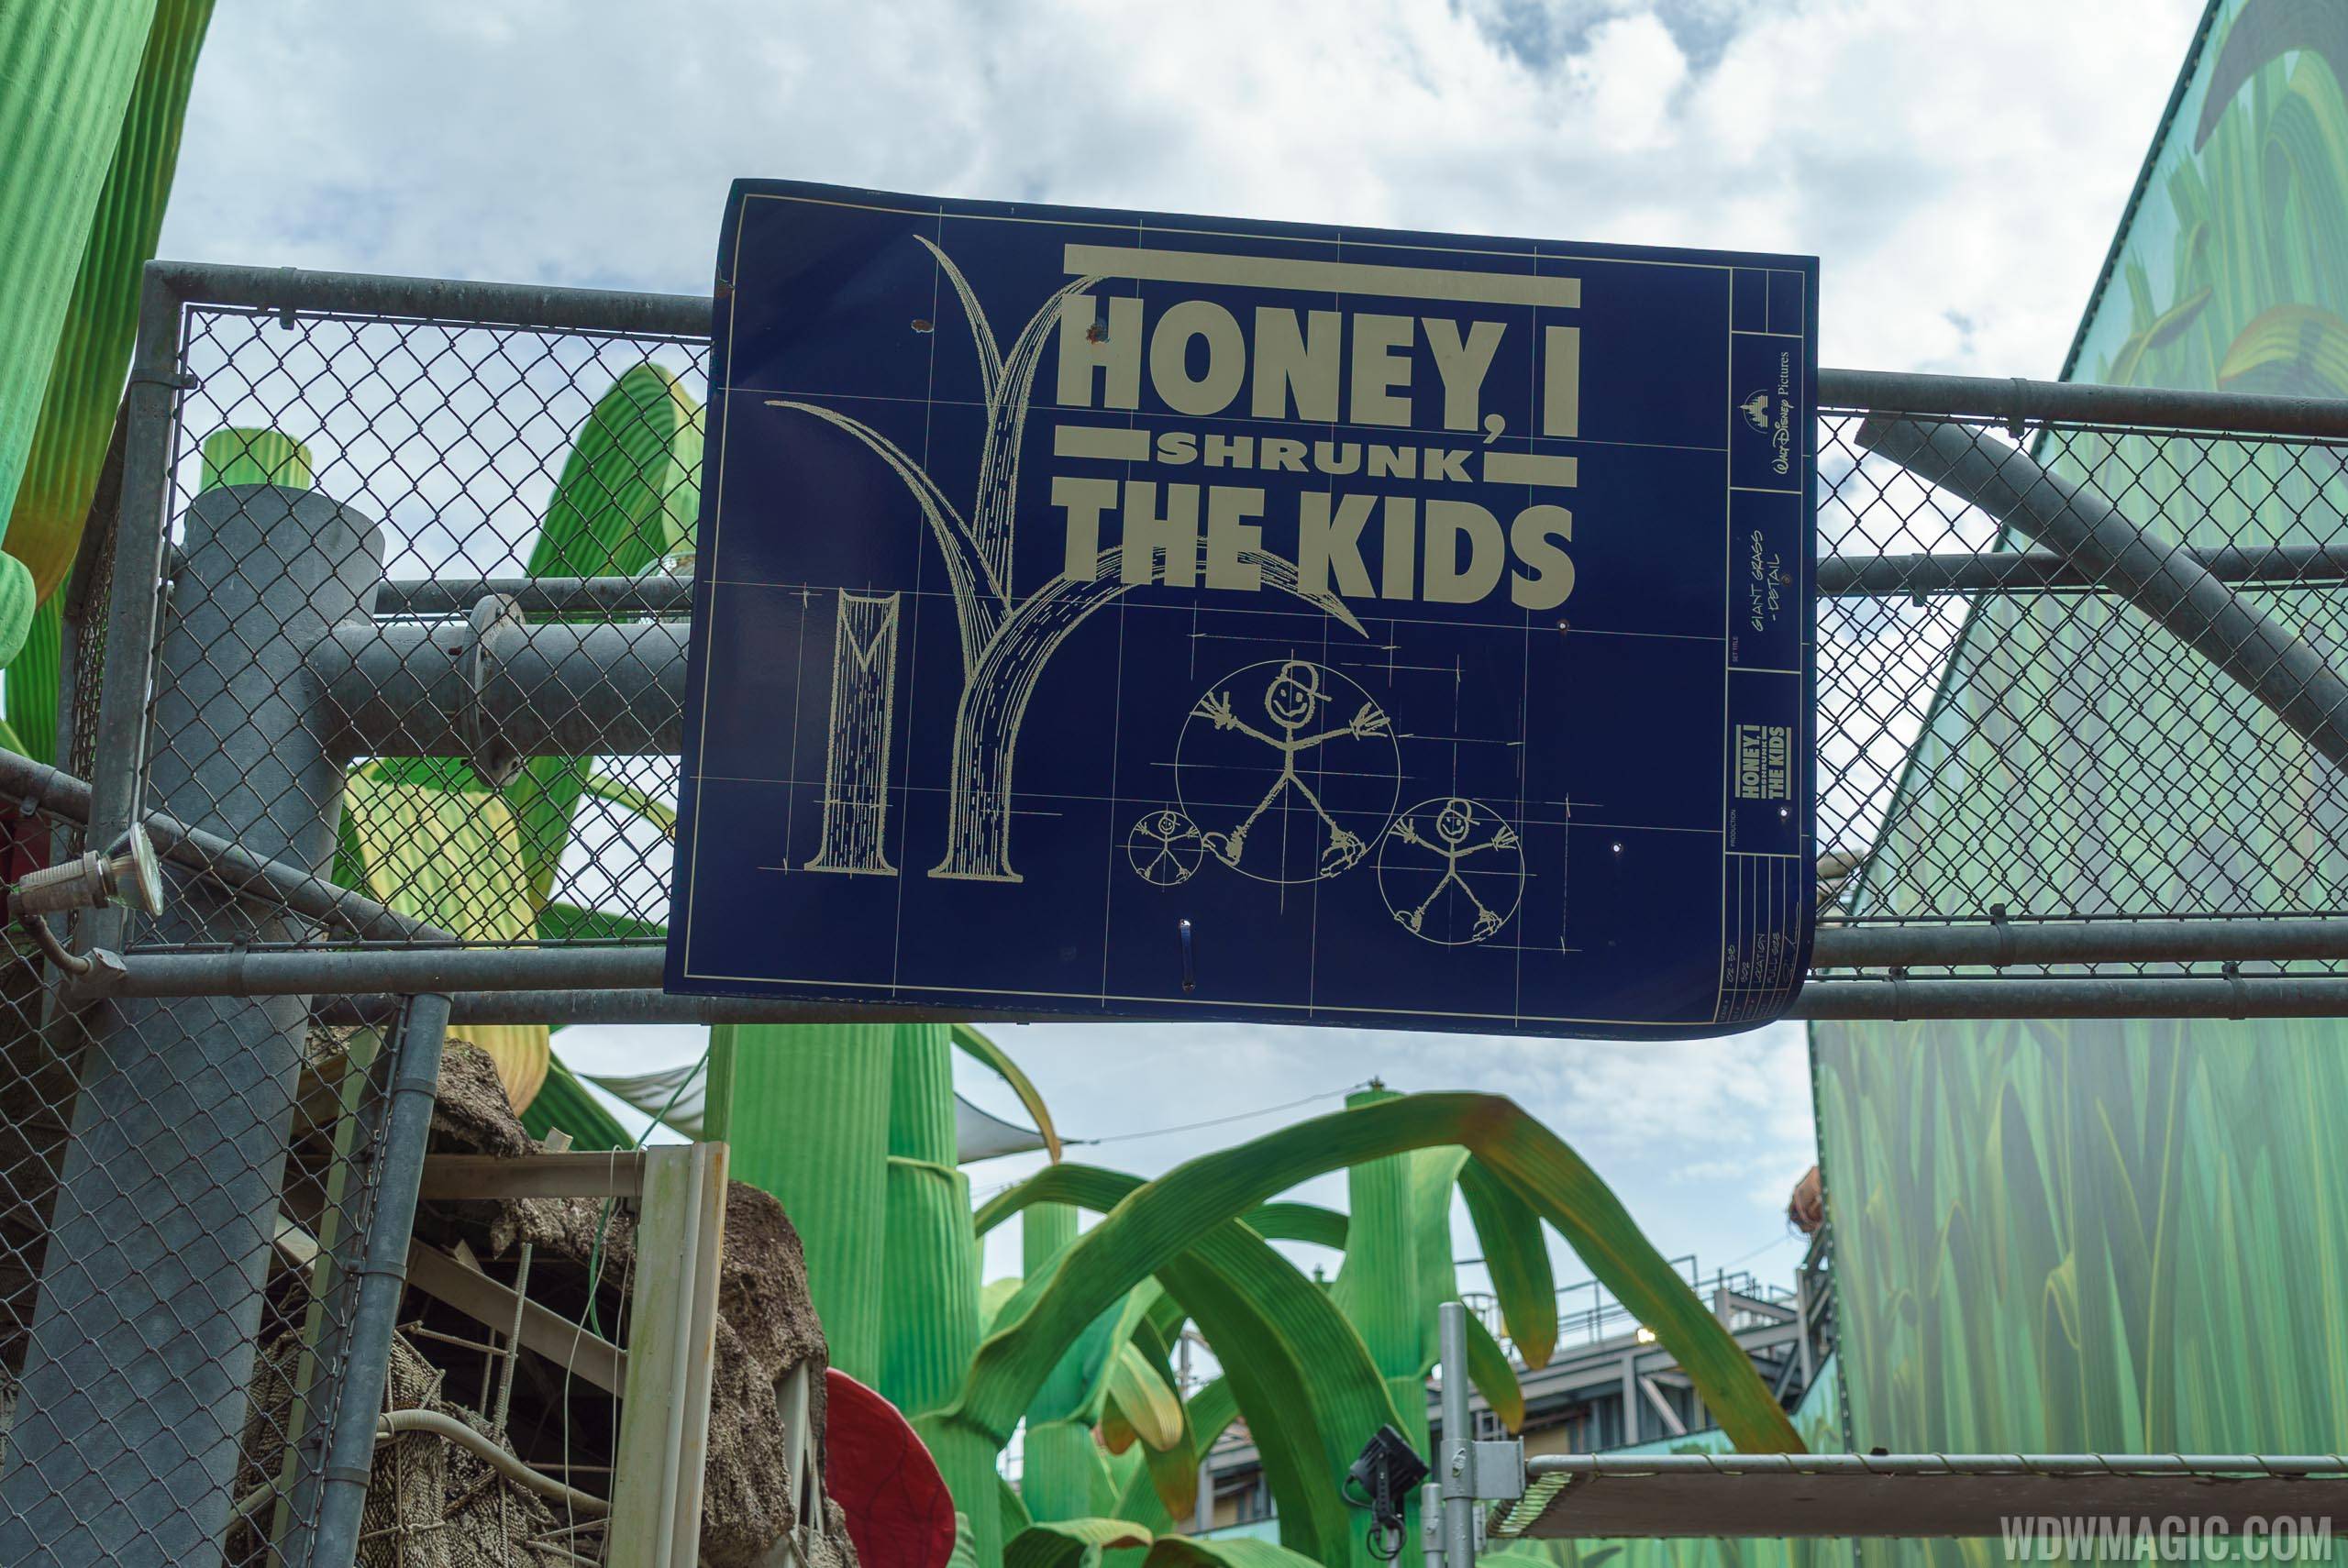 Honey, I Shrunk the Kids playground closing for refurbishment